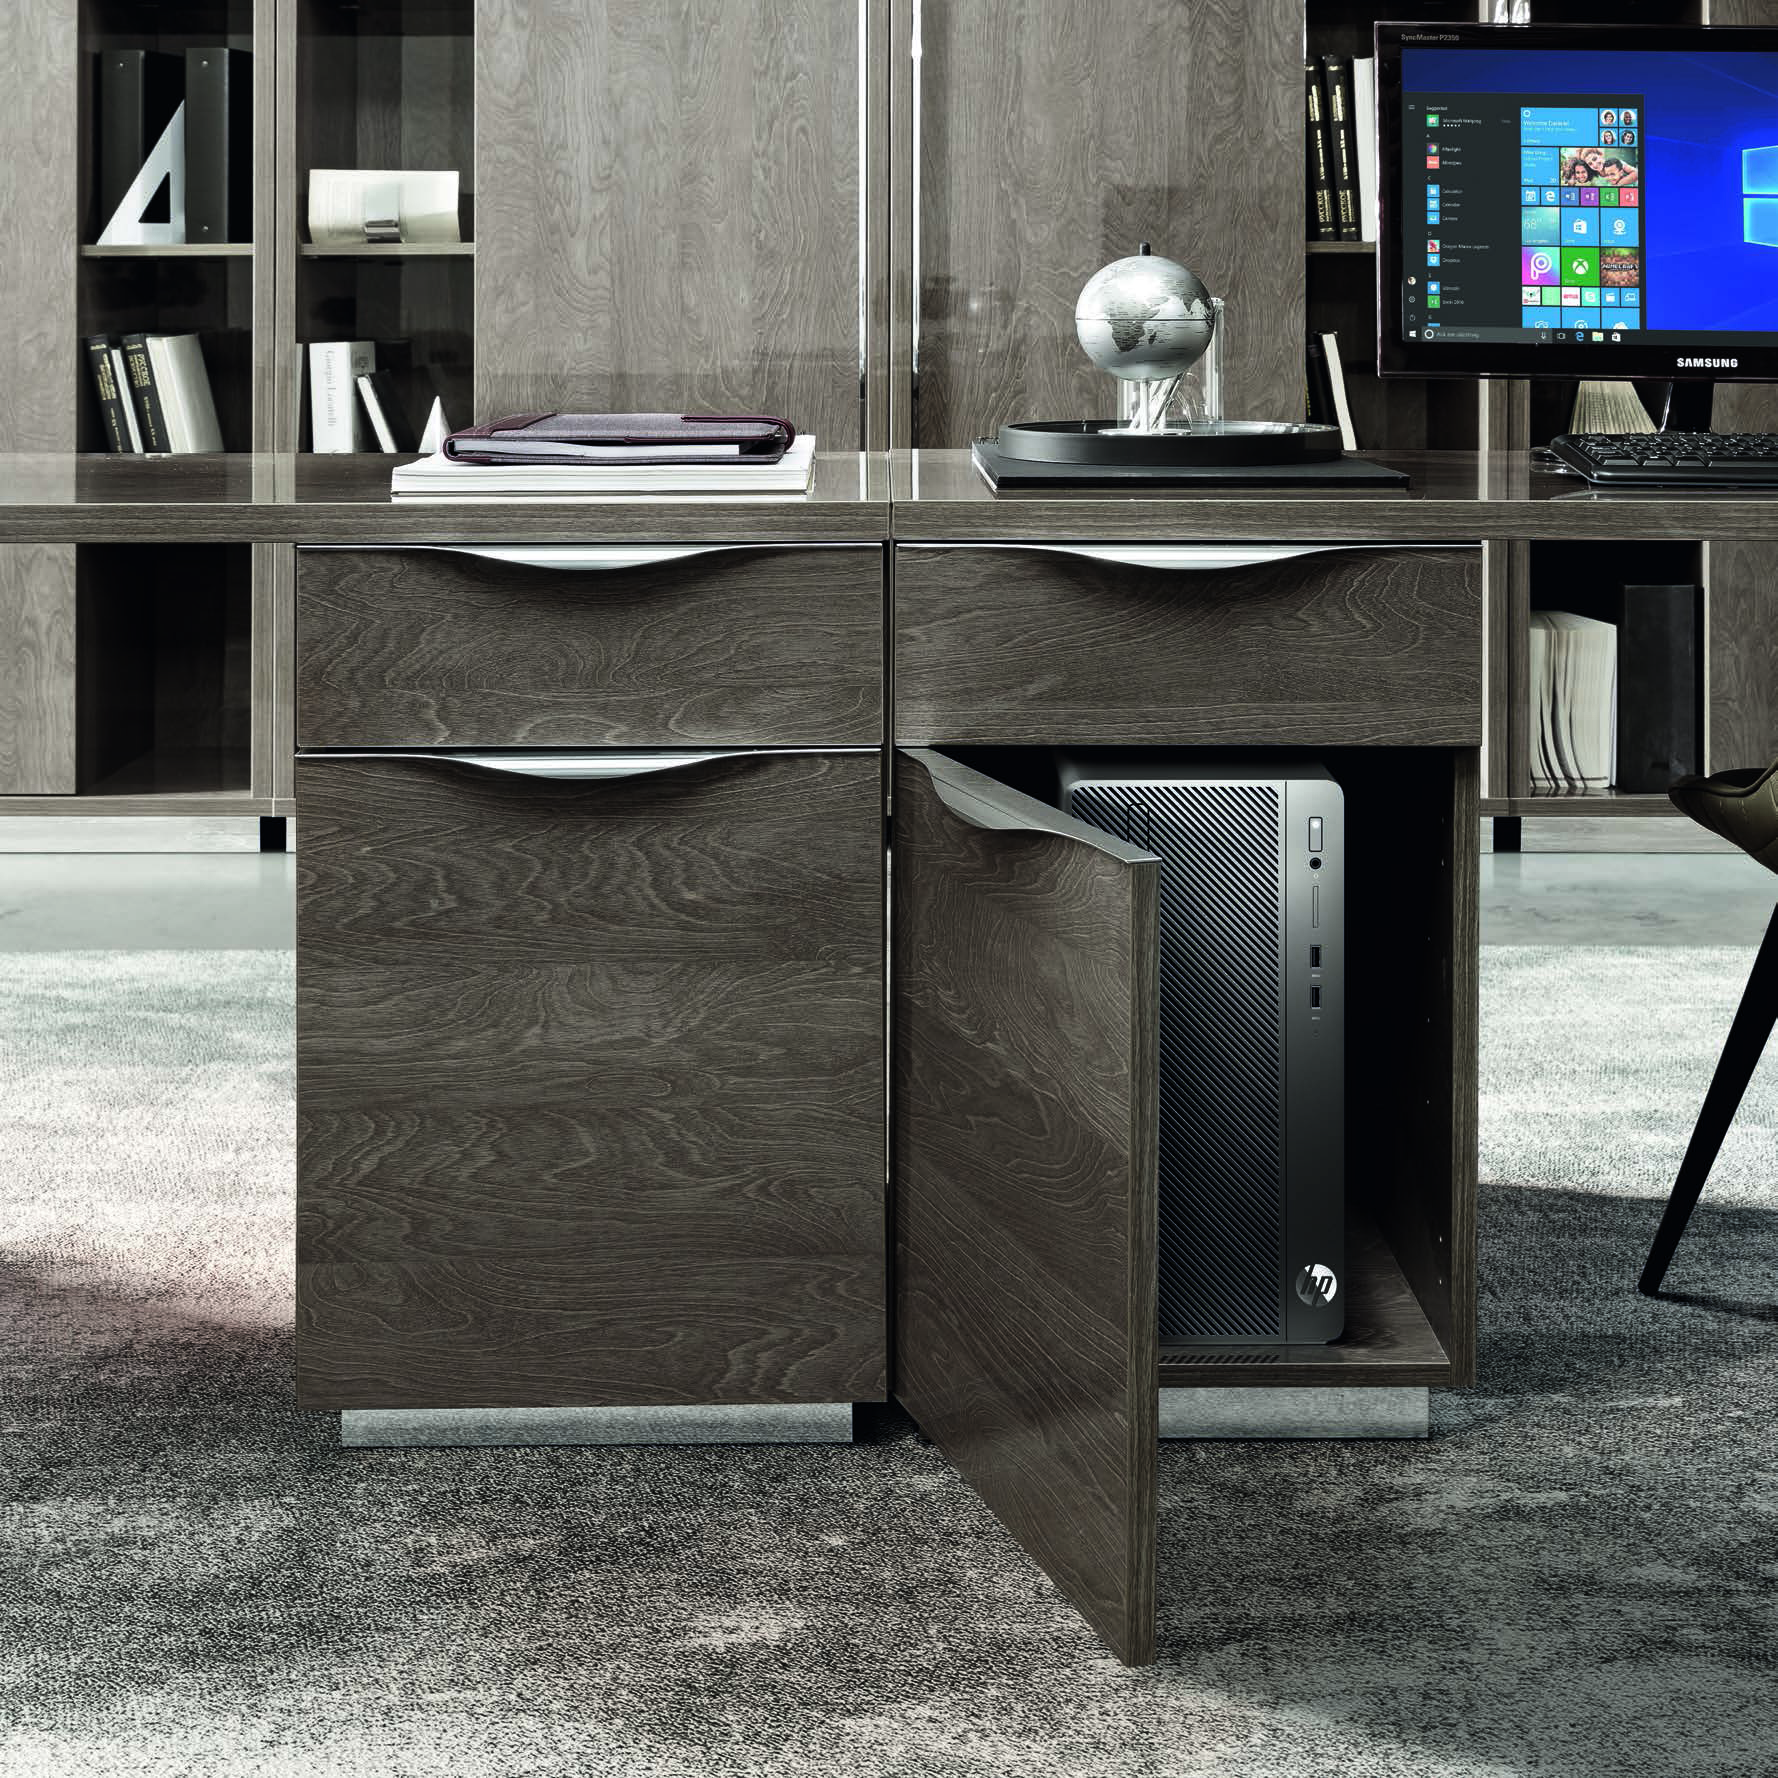 Стол письменный Camelgroup Platinum, цвет: серебристая береза, 140x65x70 см (136SCR.01PL)136SCR.01PL